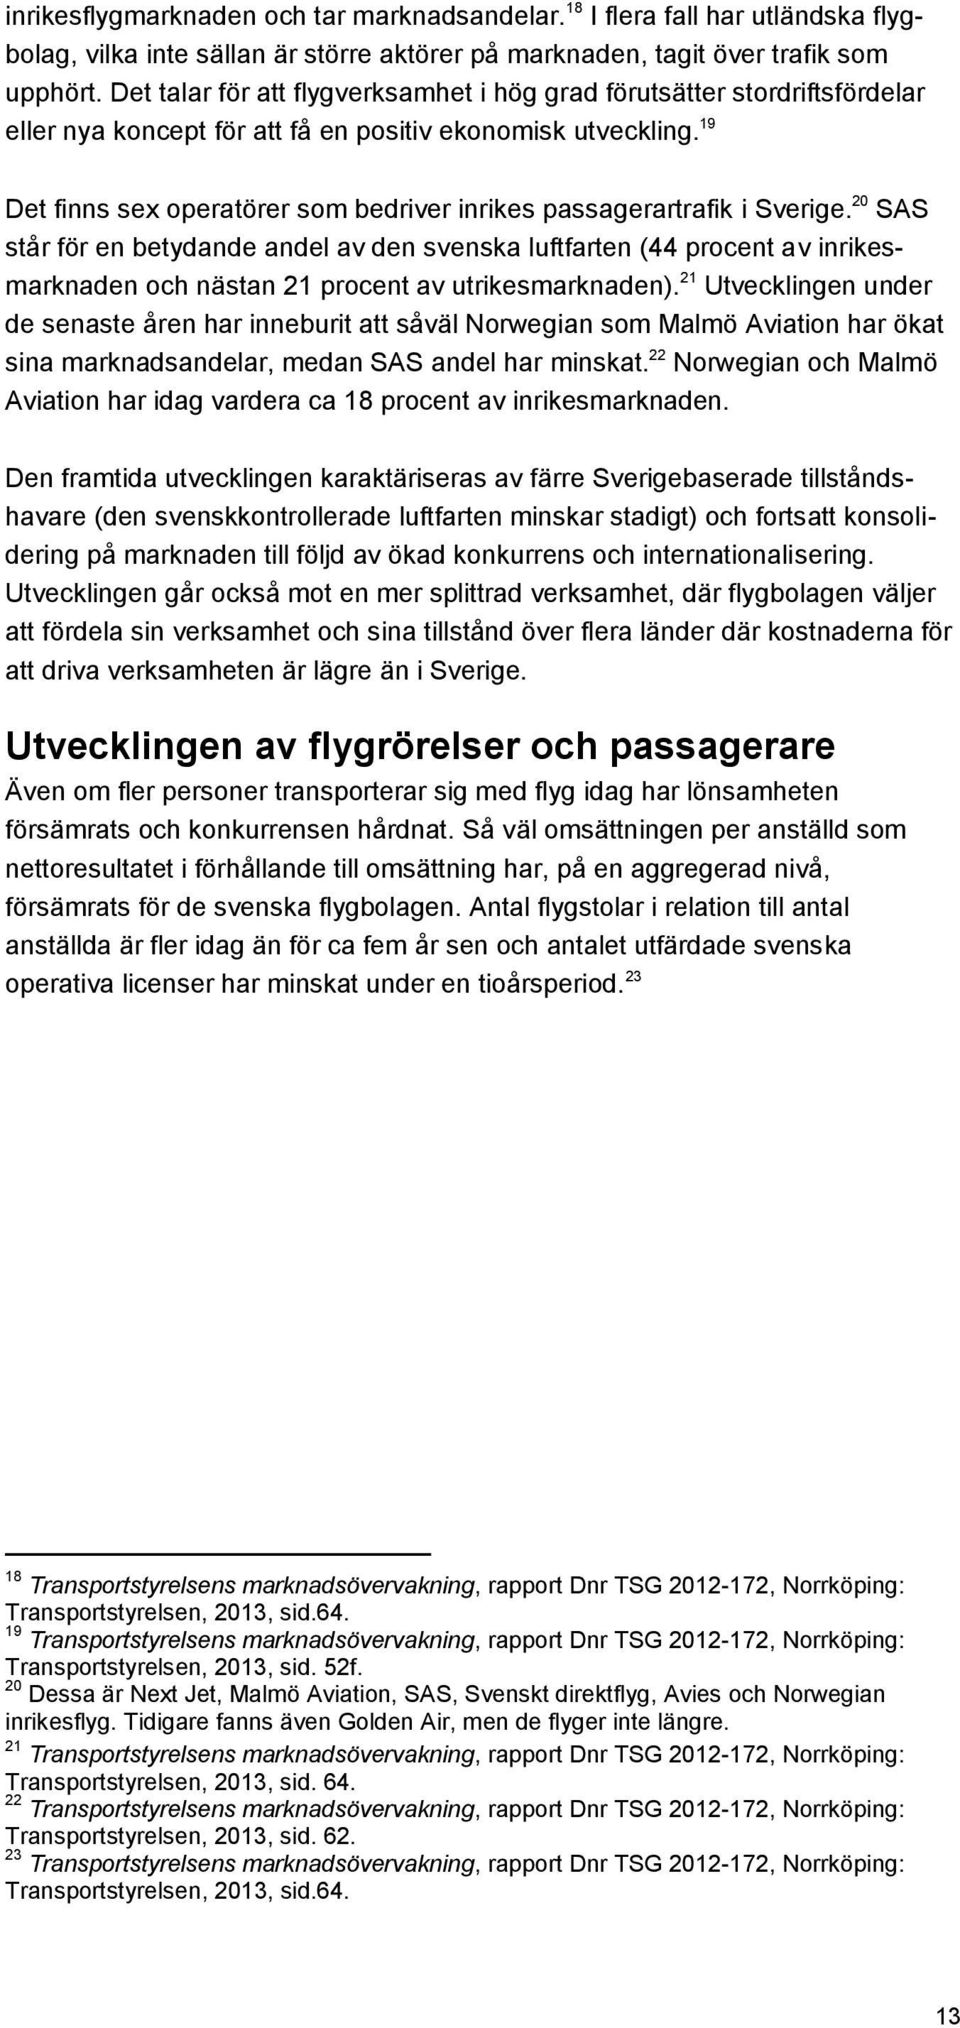 19 Det finns sex operatörer som bedriver inrikes passagerartrafik i Sverige.